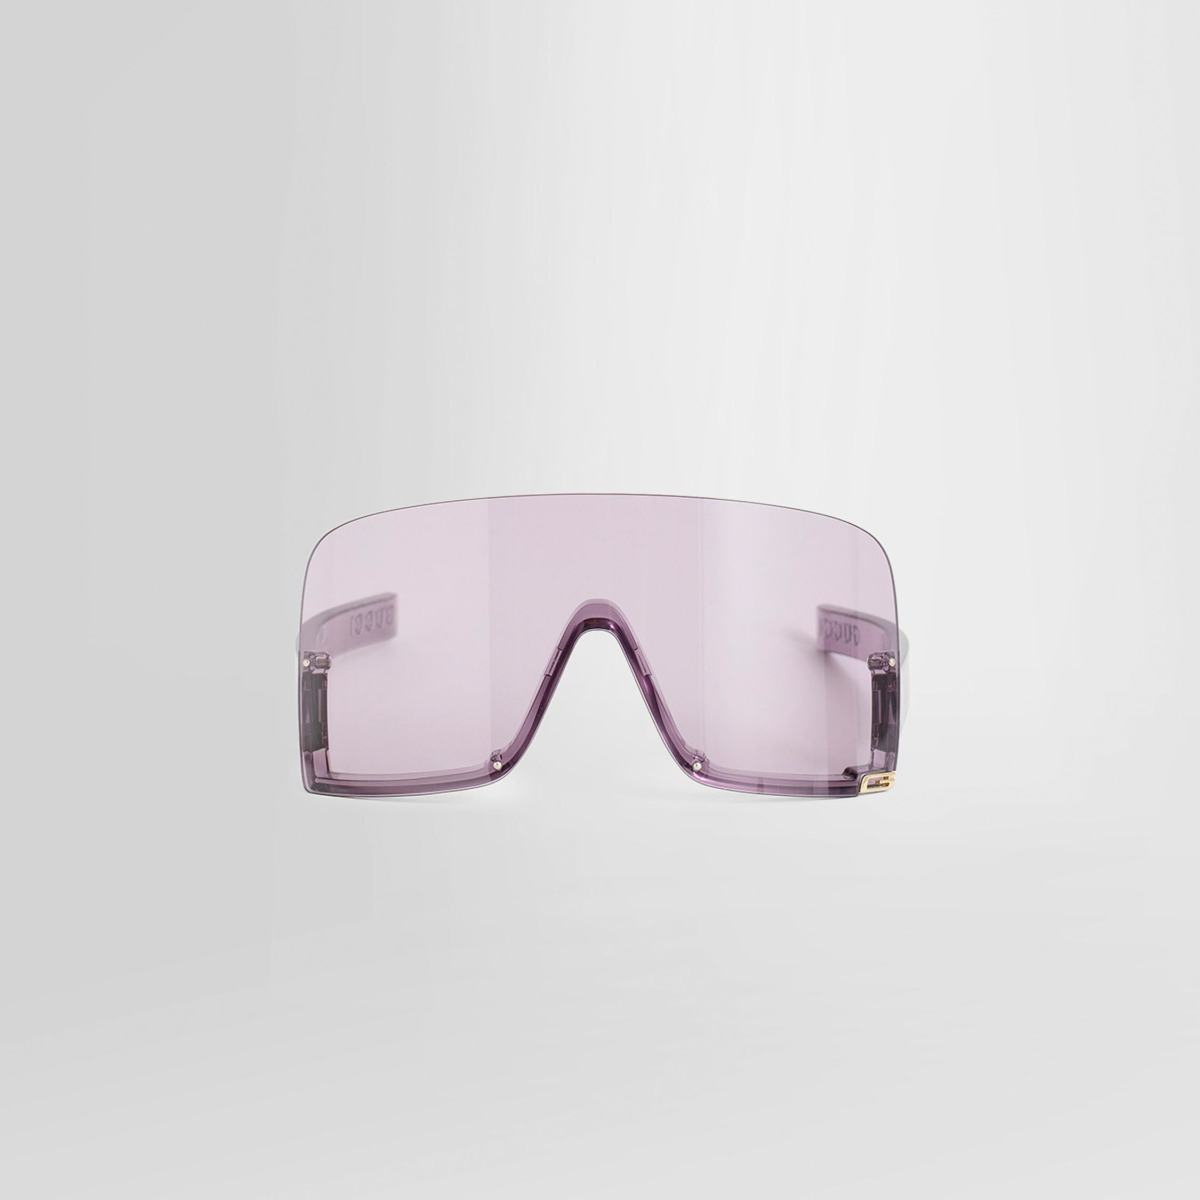 Gucci - Sunglasses Purple by Antonioli GOOFASH